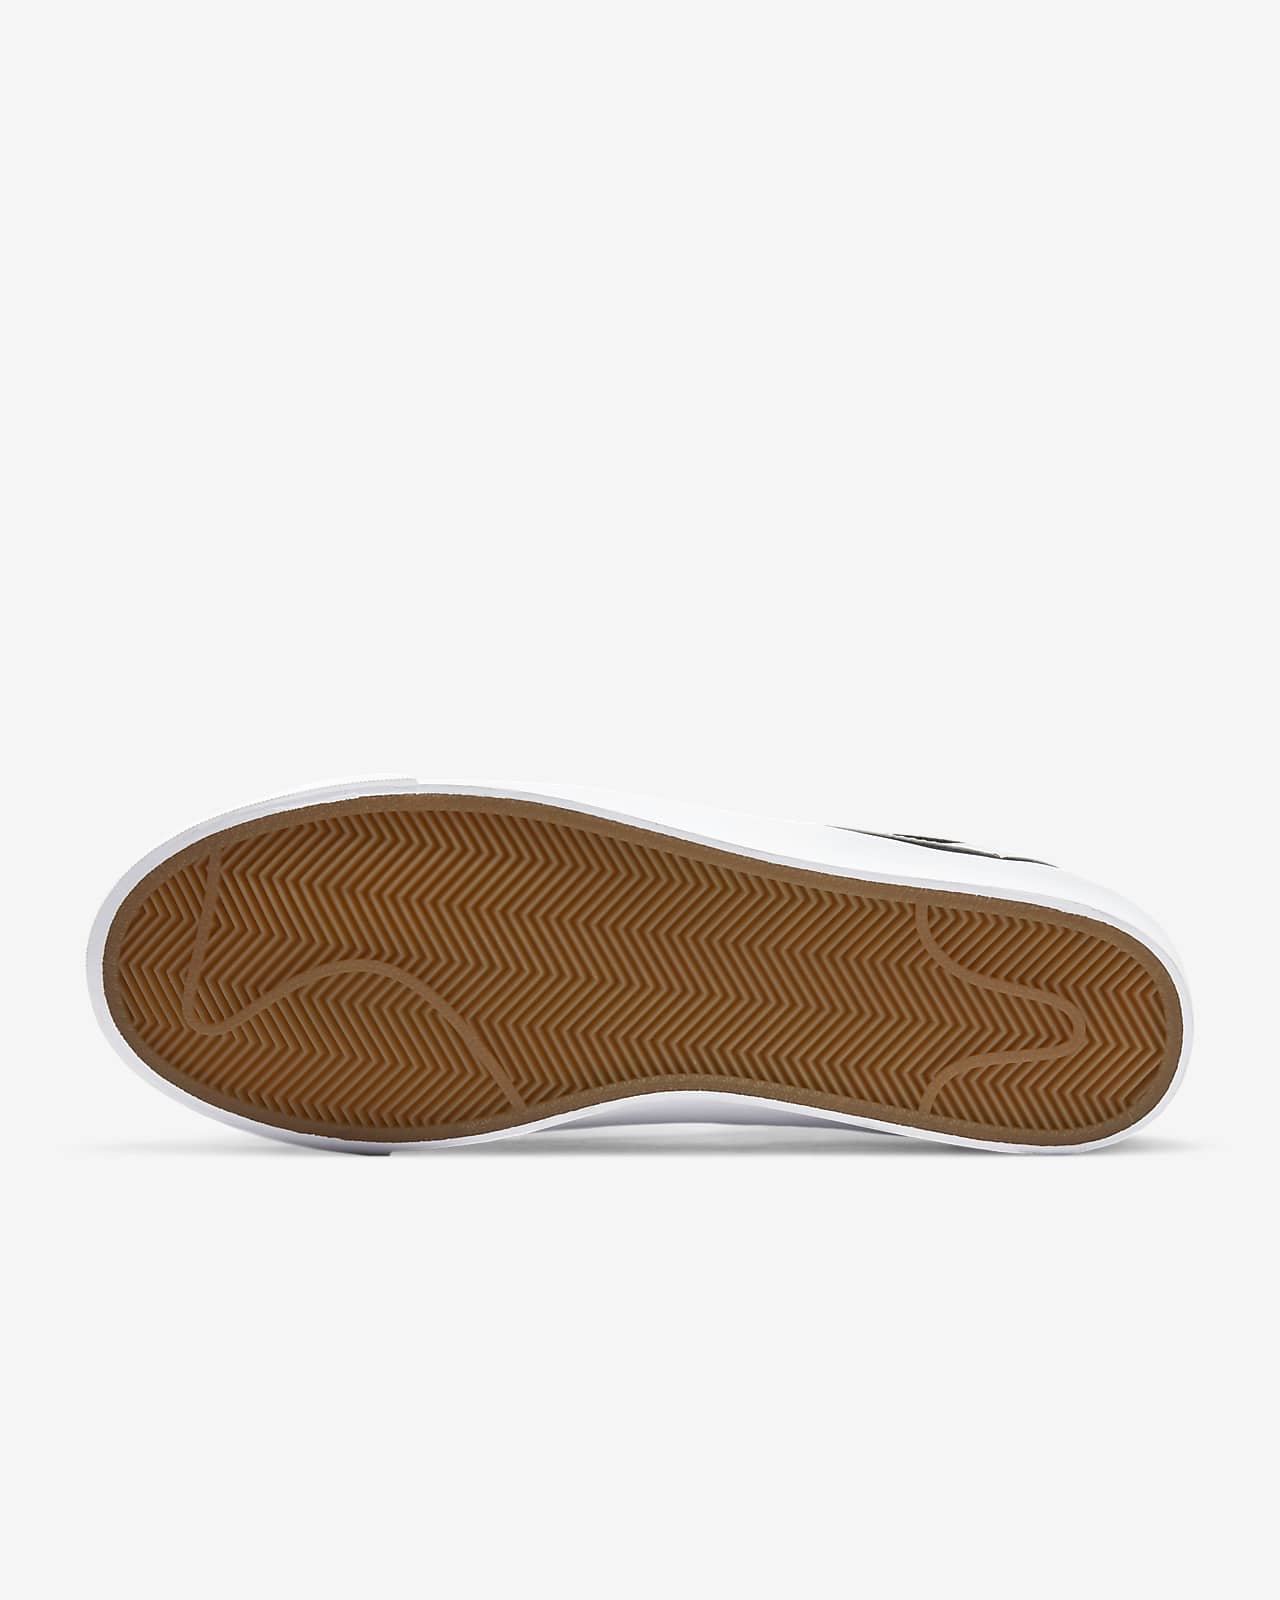 Esta llorando Acumulativo Tomate Nike SB Zoom Blazer Low Pro GT Zapatillas de skateboard. Nike ES